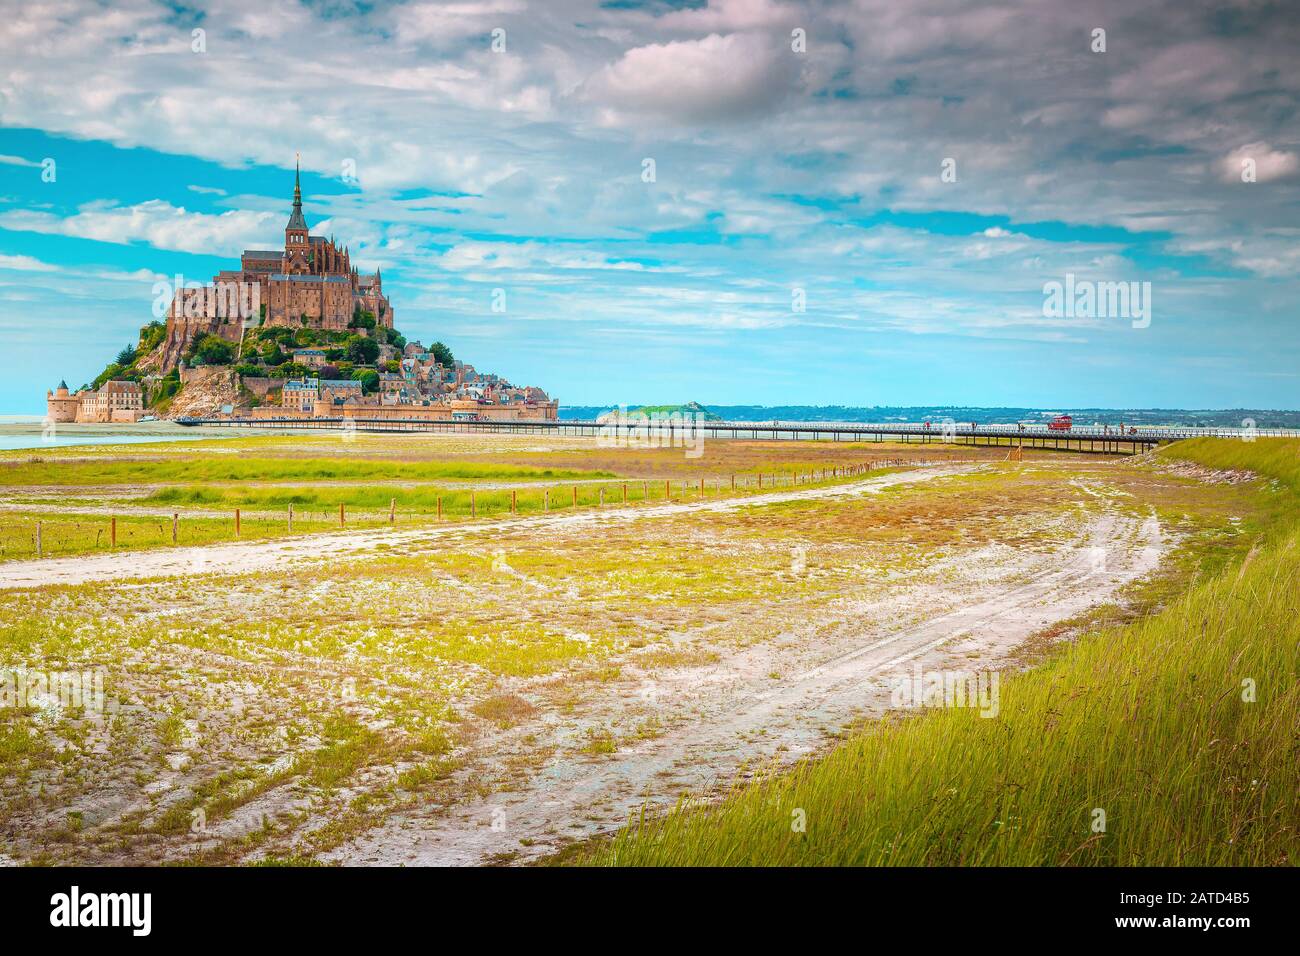 Popolare attrazione turistica Mont Saint Michel cattedrale sull'isola di marea con le nuvole spettacolari. Posizione fantastica in Normandia, Francia, Eur Foto Stock